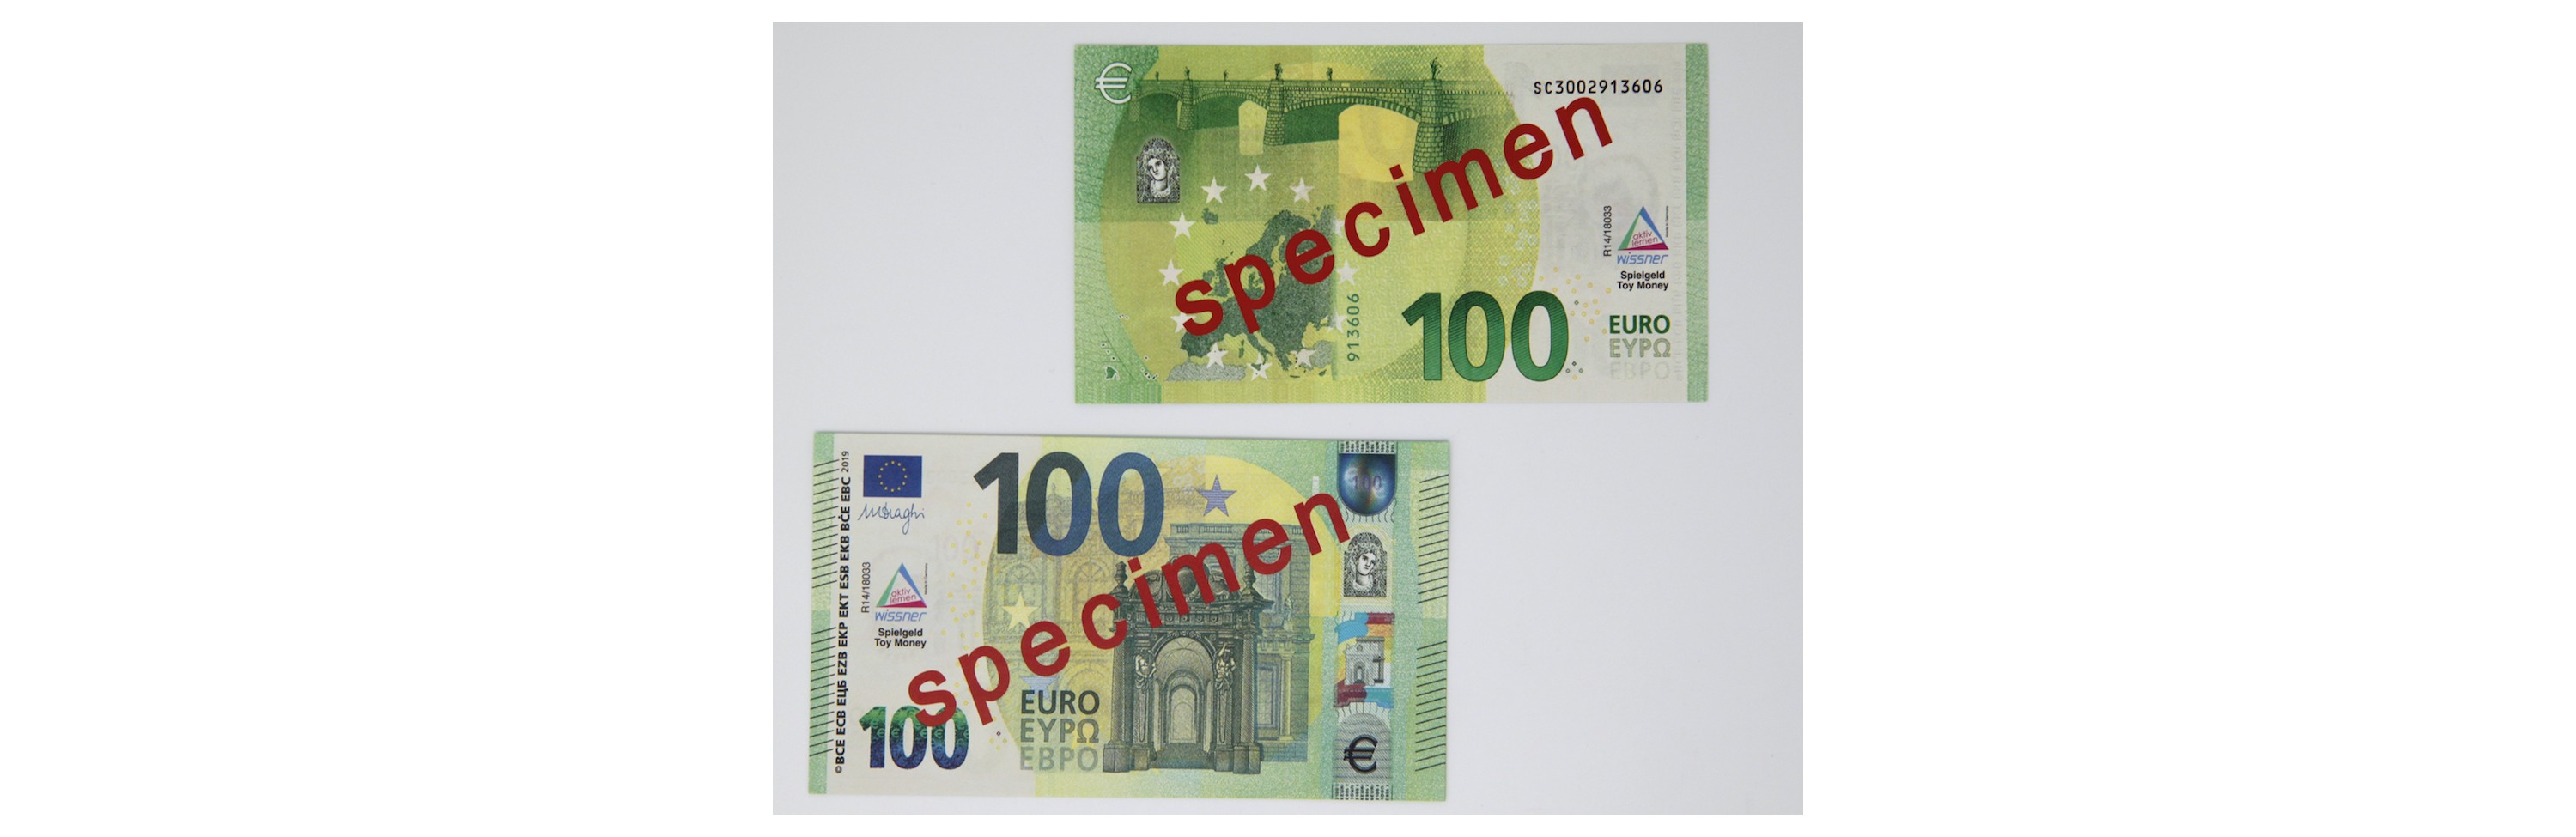 Wissner® aktiv lernen - 100 Euro-Schein (100 Stück)